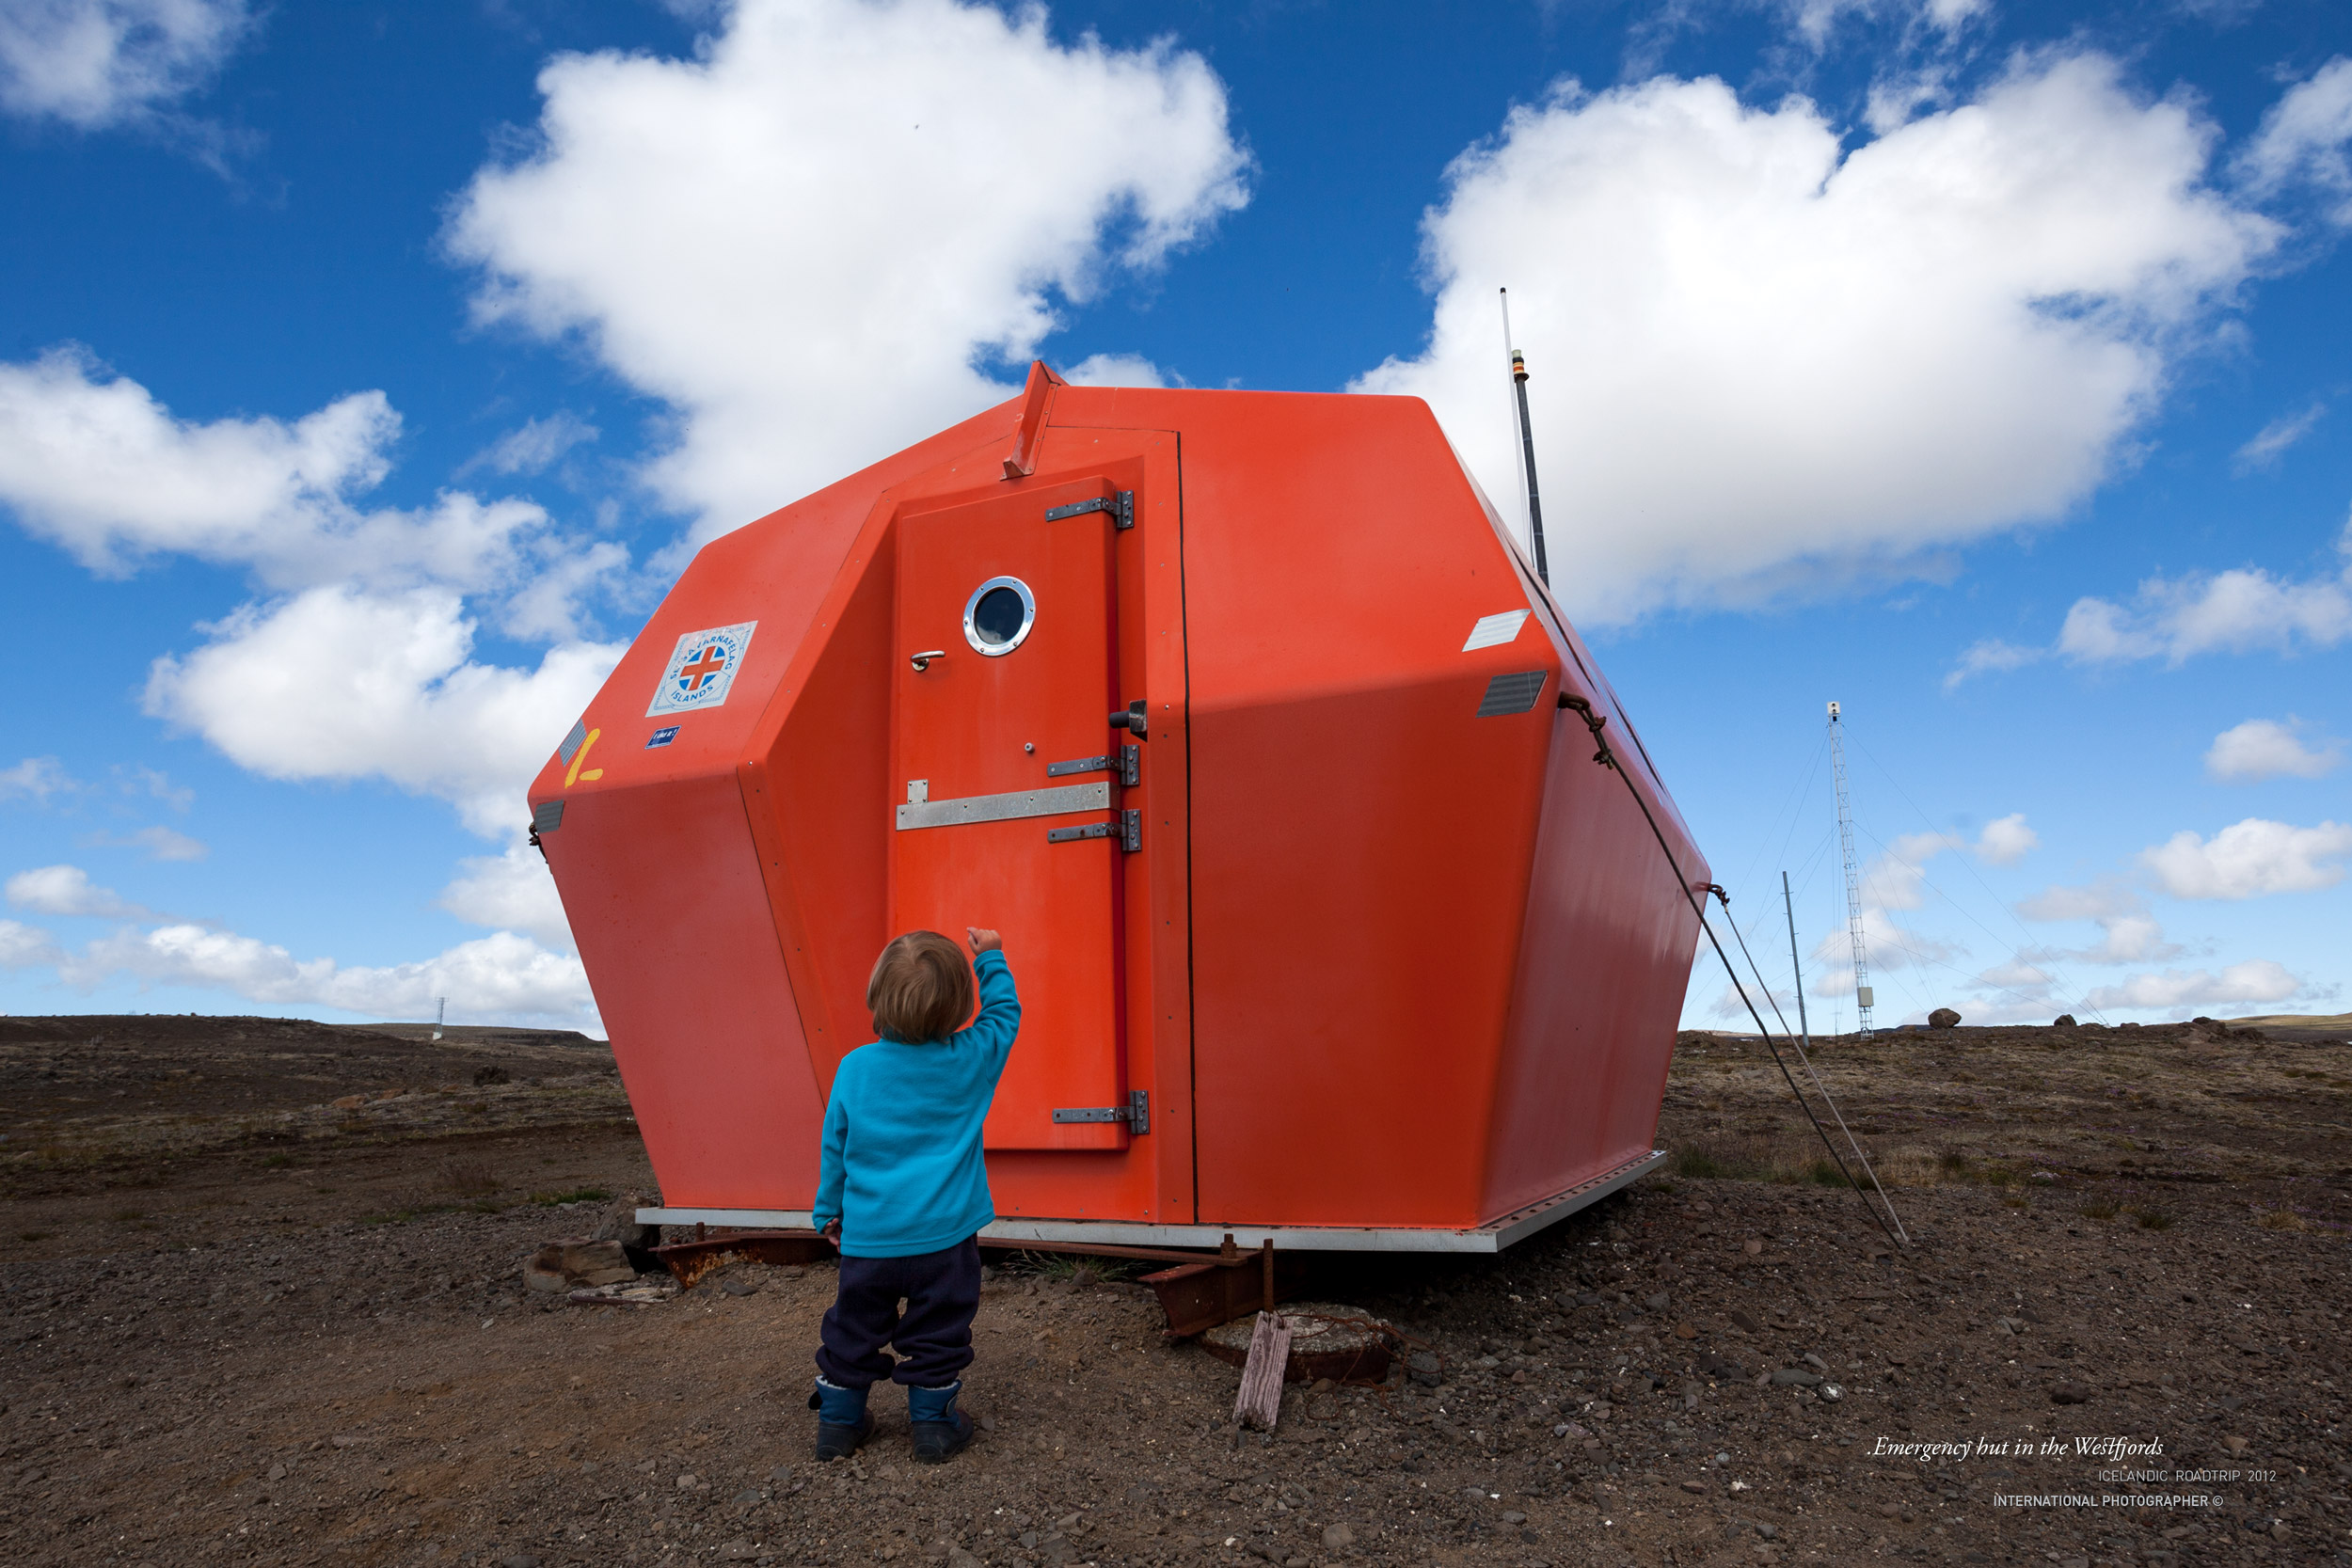 2012 ICELAND westfjords emergency hut 2